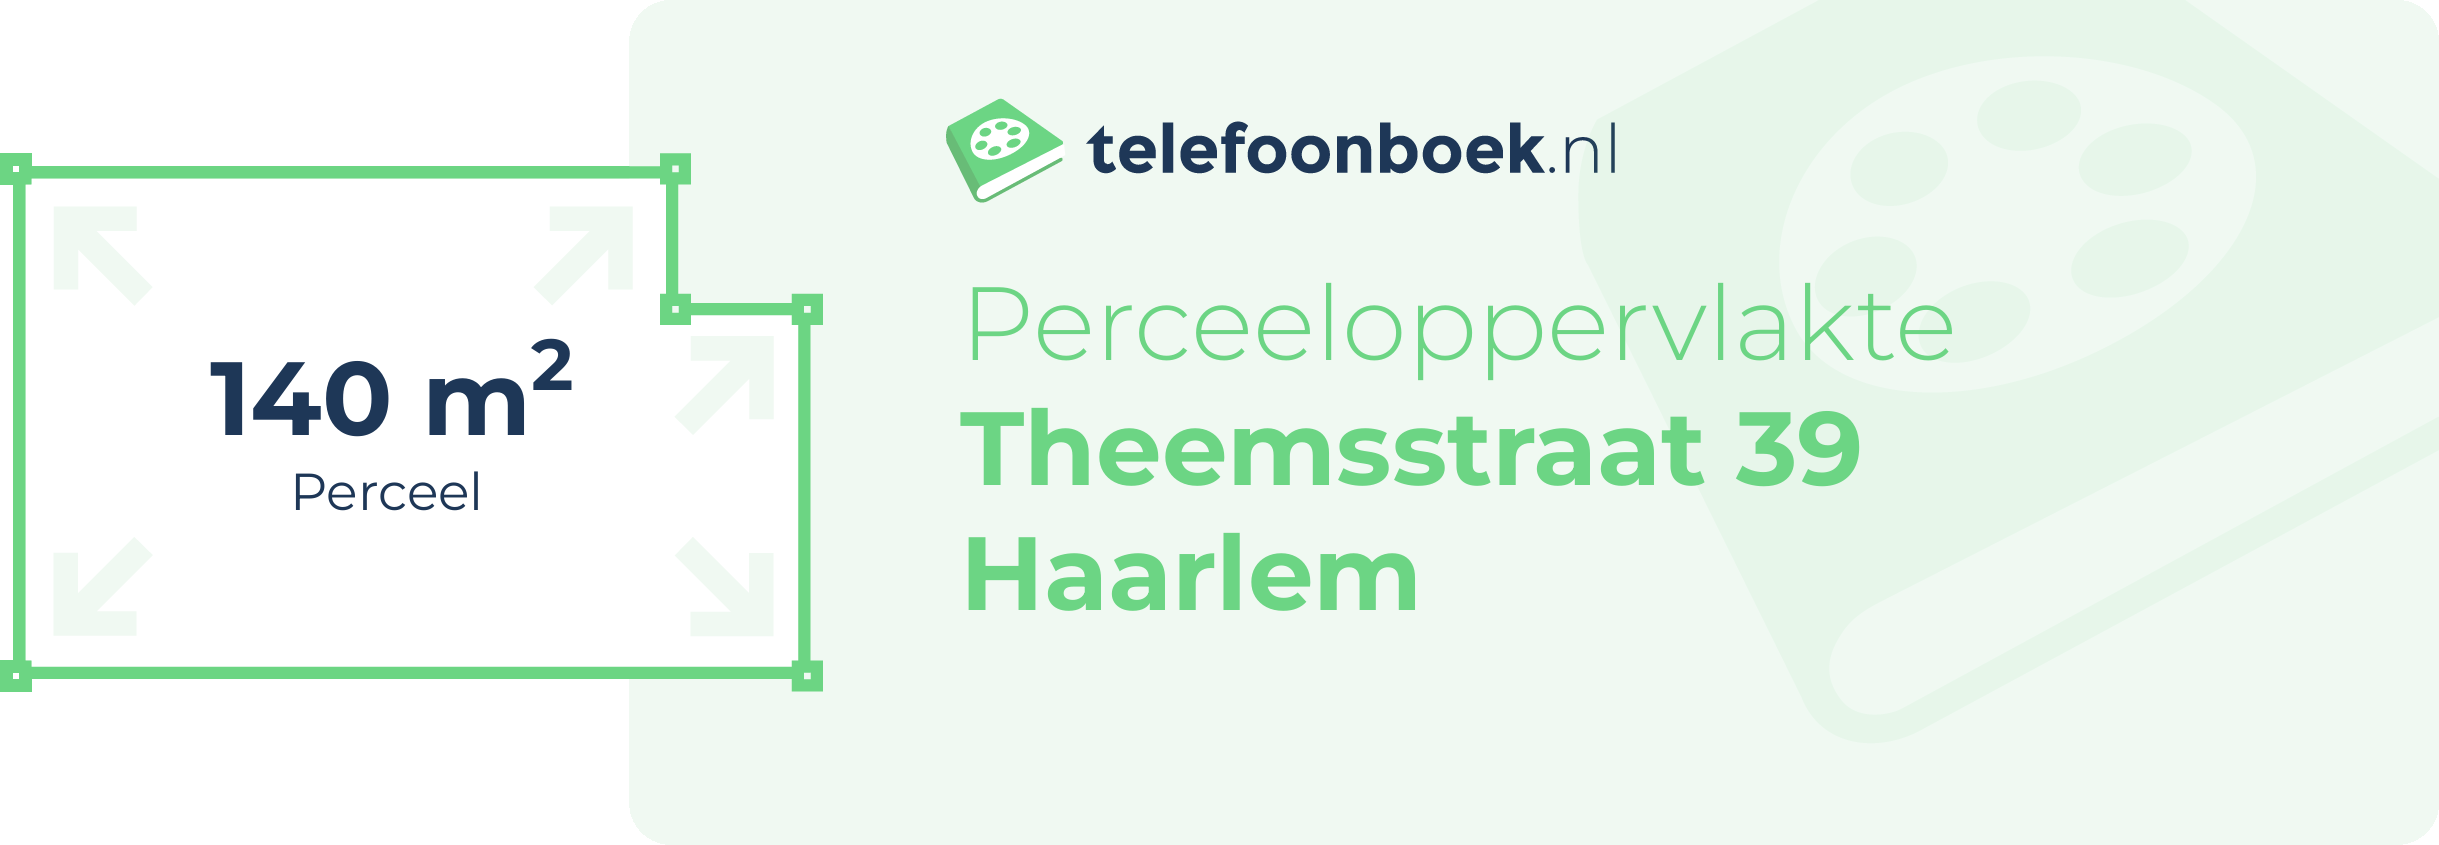 Perceeloppervlakte Theemsstraat 39 Haarlem